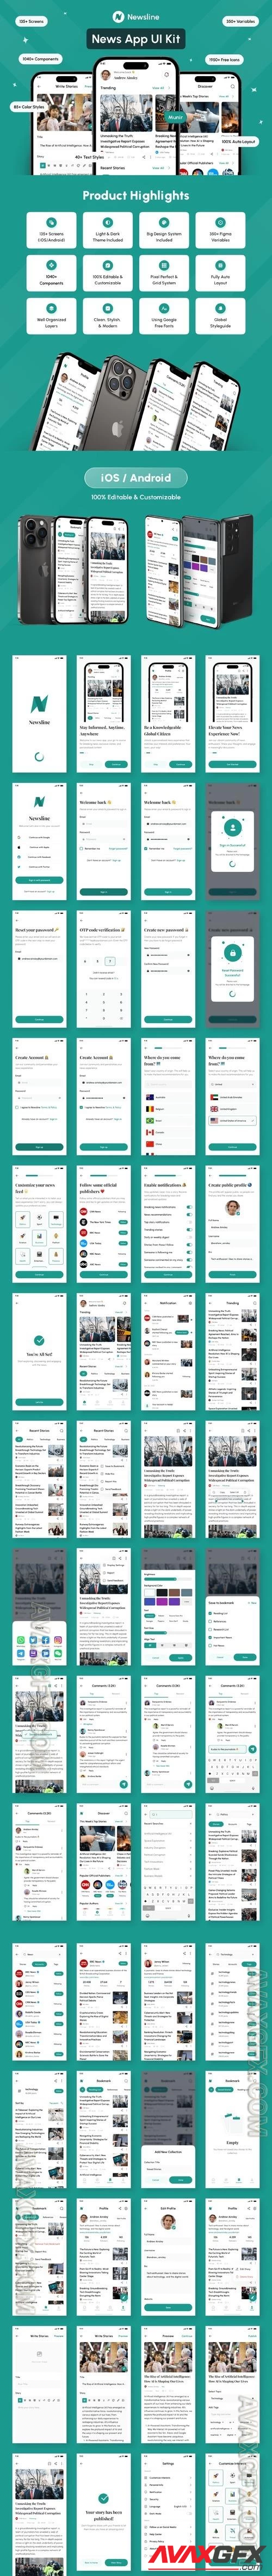 Newsline - News App UI Kit - UI8